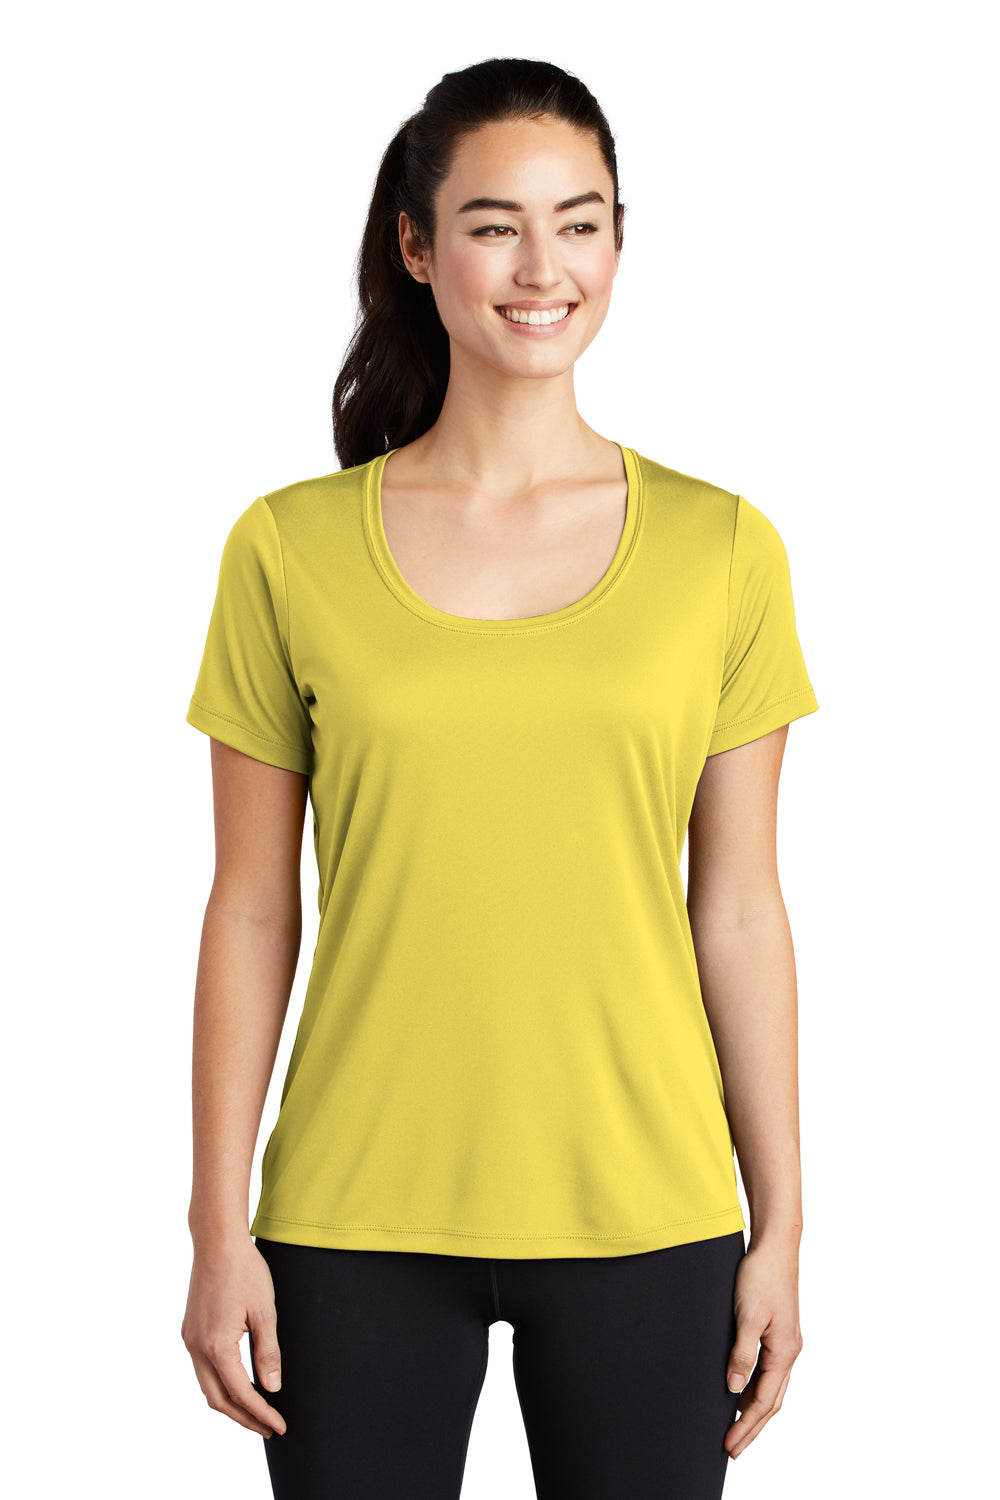 Sport-Tek Womens Short Sleeve Scoop Neck T-Shirt Yellow Front